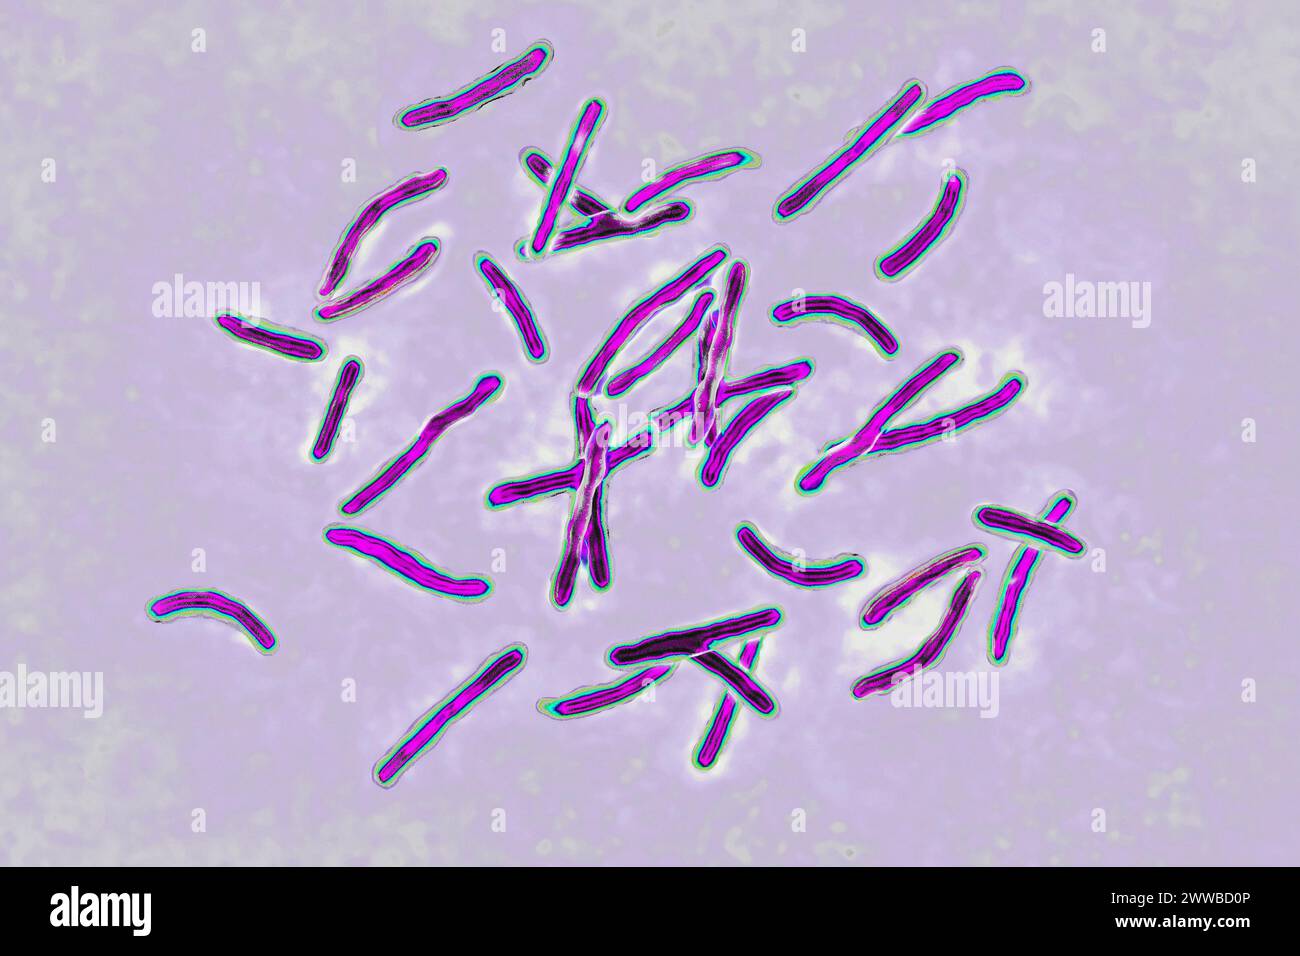 Bacillus Koch (Bk) or Mycobacterium tuberculosis, it is responsible for tuberculosis. Stock Photo